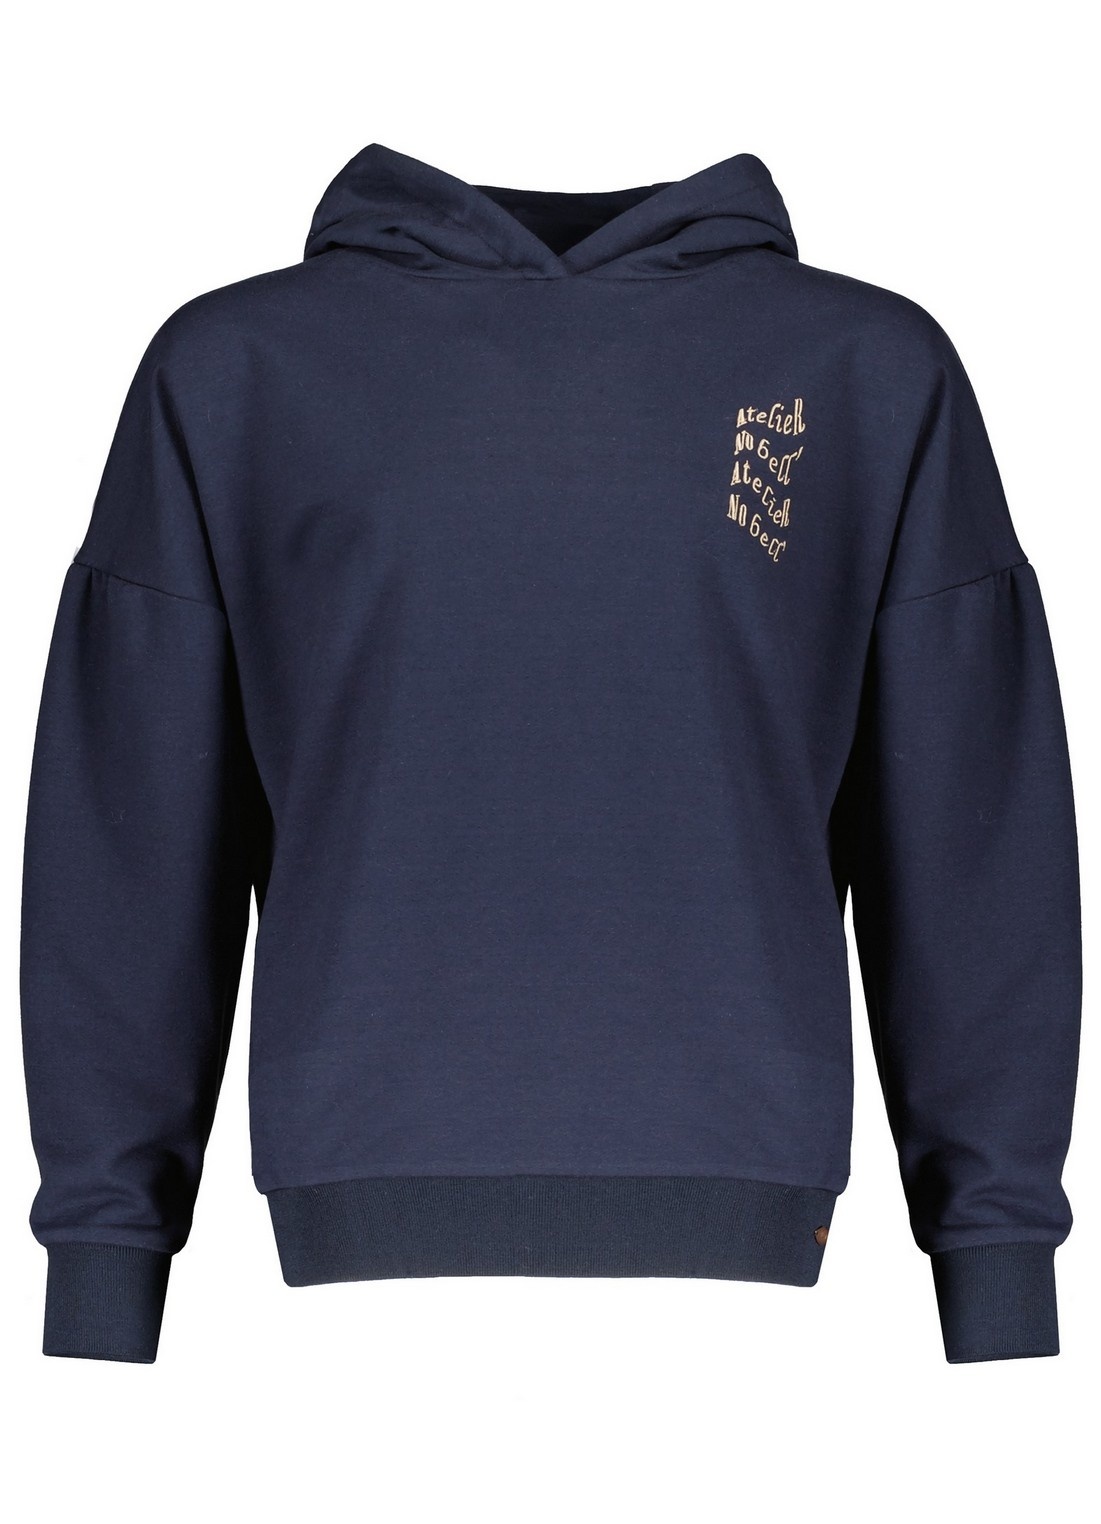 NoBell Meisjes hoodie - Kuran - Grijs navy blauw